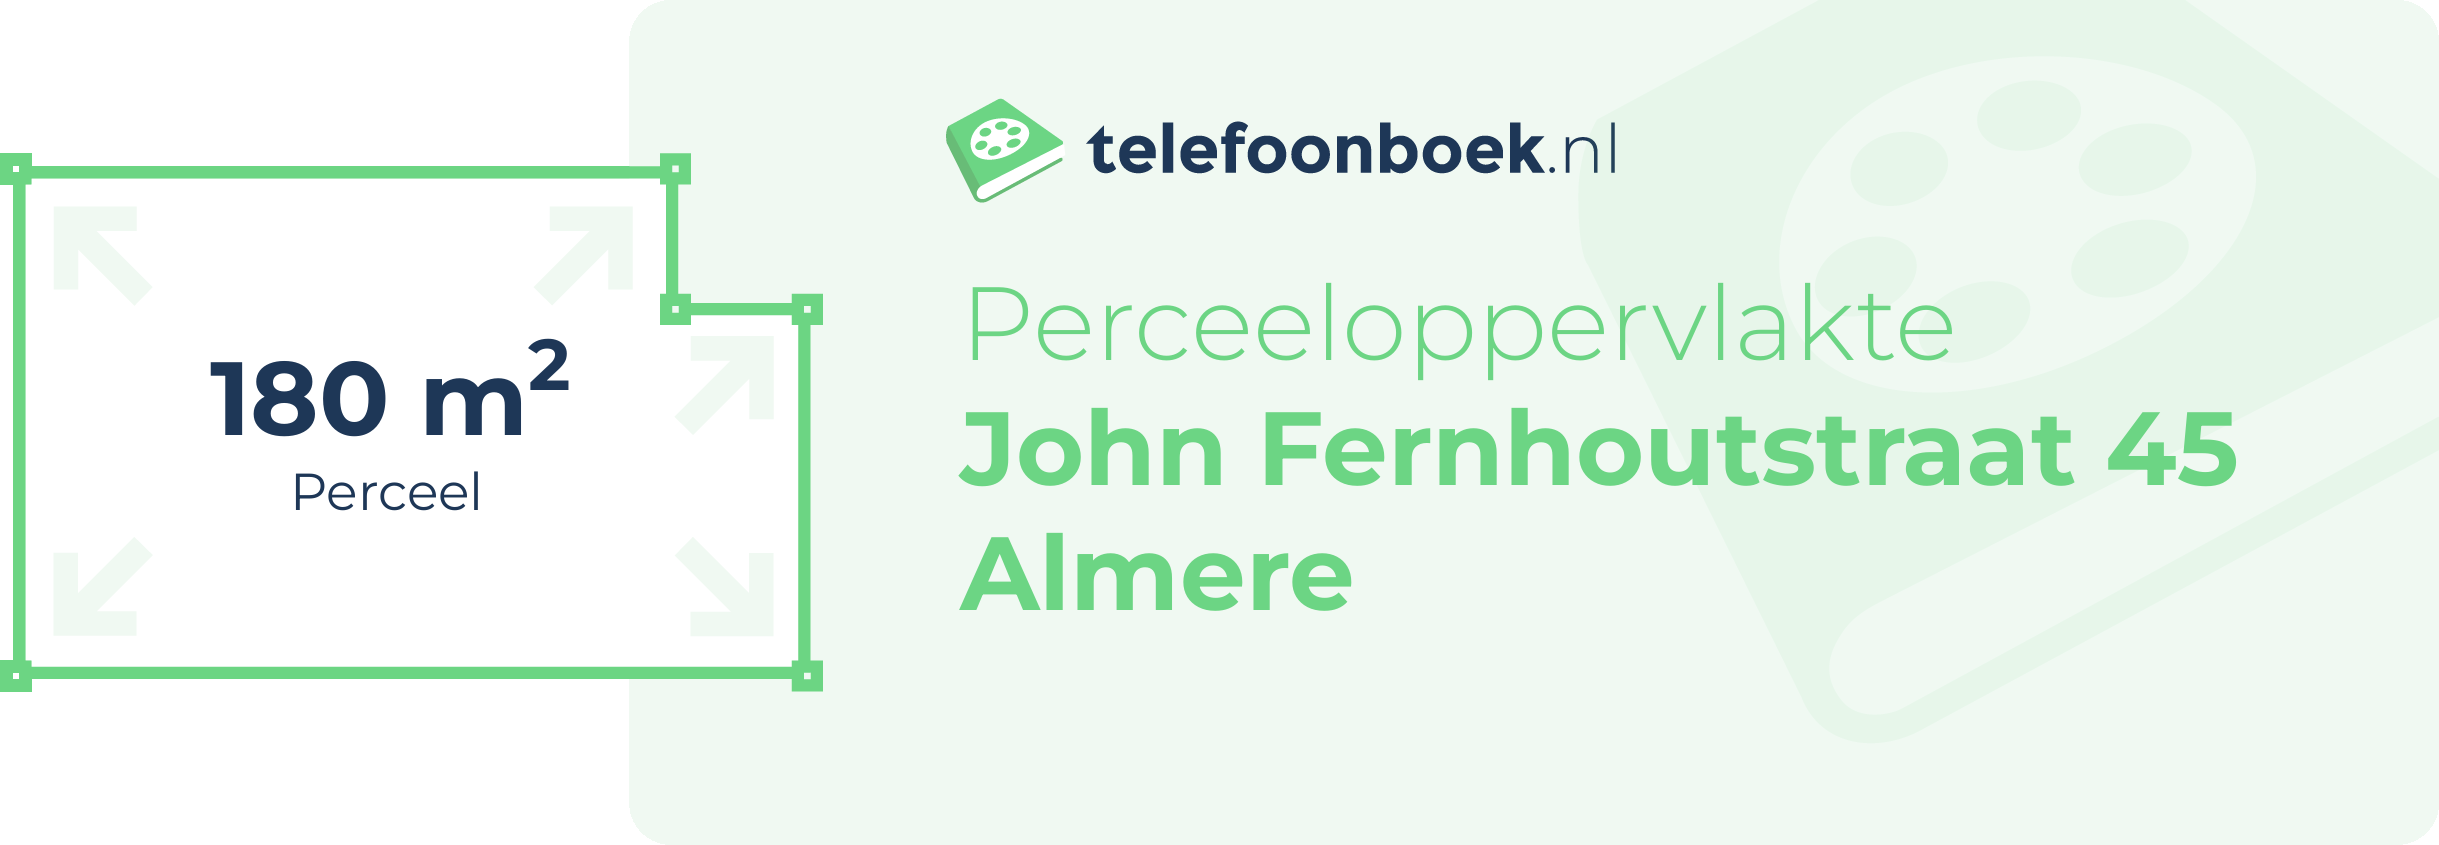 Perceeloppervlakte John Fernhoutstraat 45 Almere